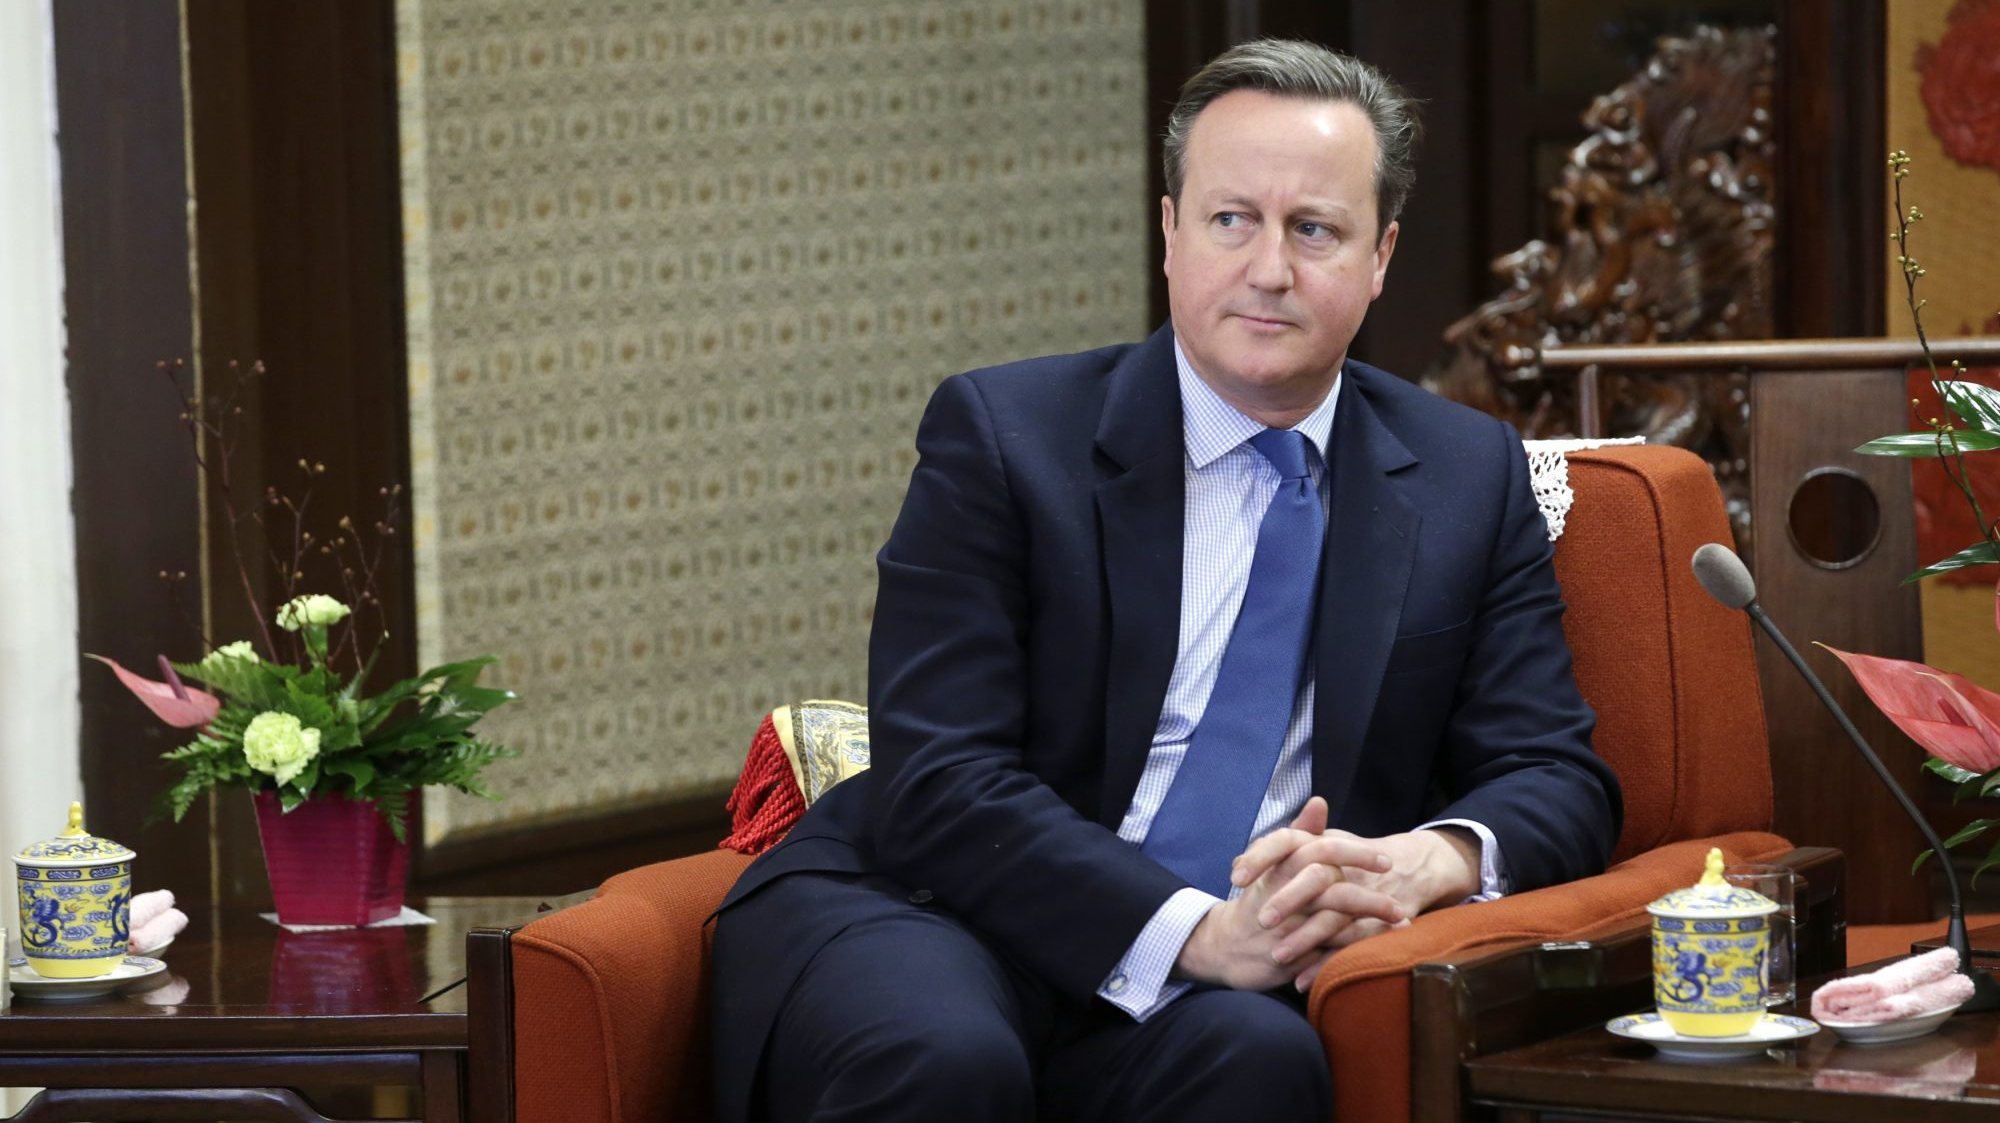 David Cameron renunciou ao cargo de primeiro-ministro em 2016, após o referendo que culminou no Brexit